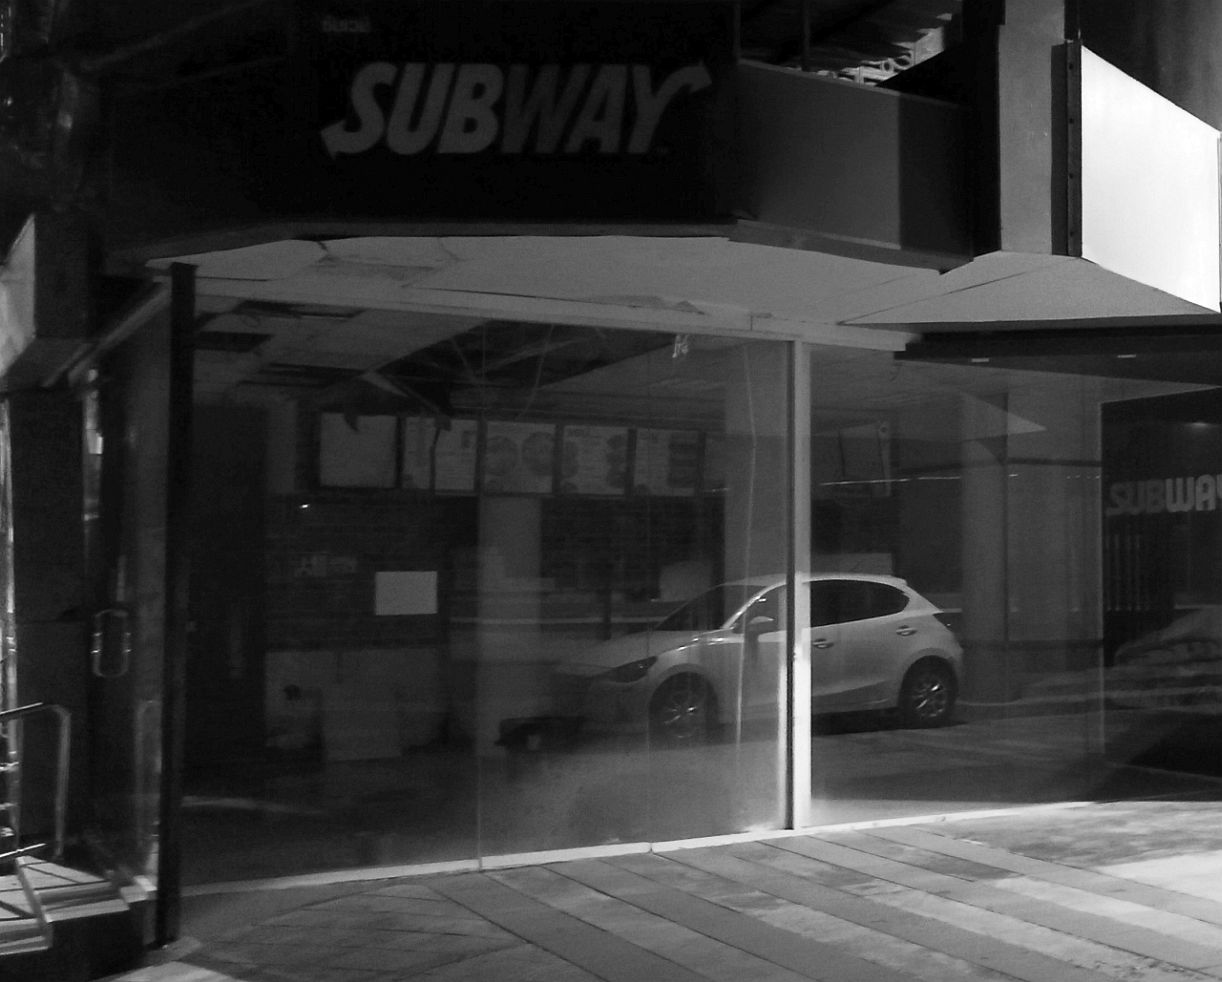 Subway, Soi 8